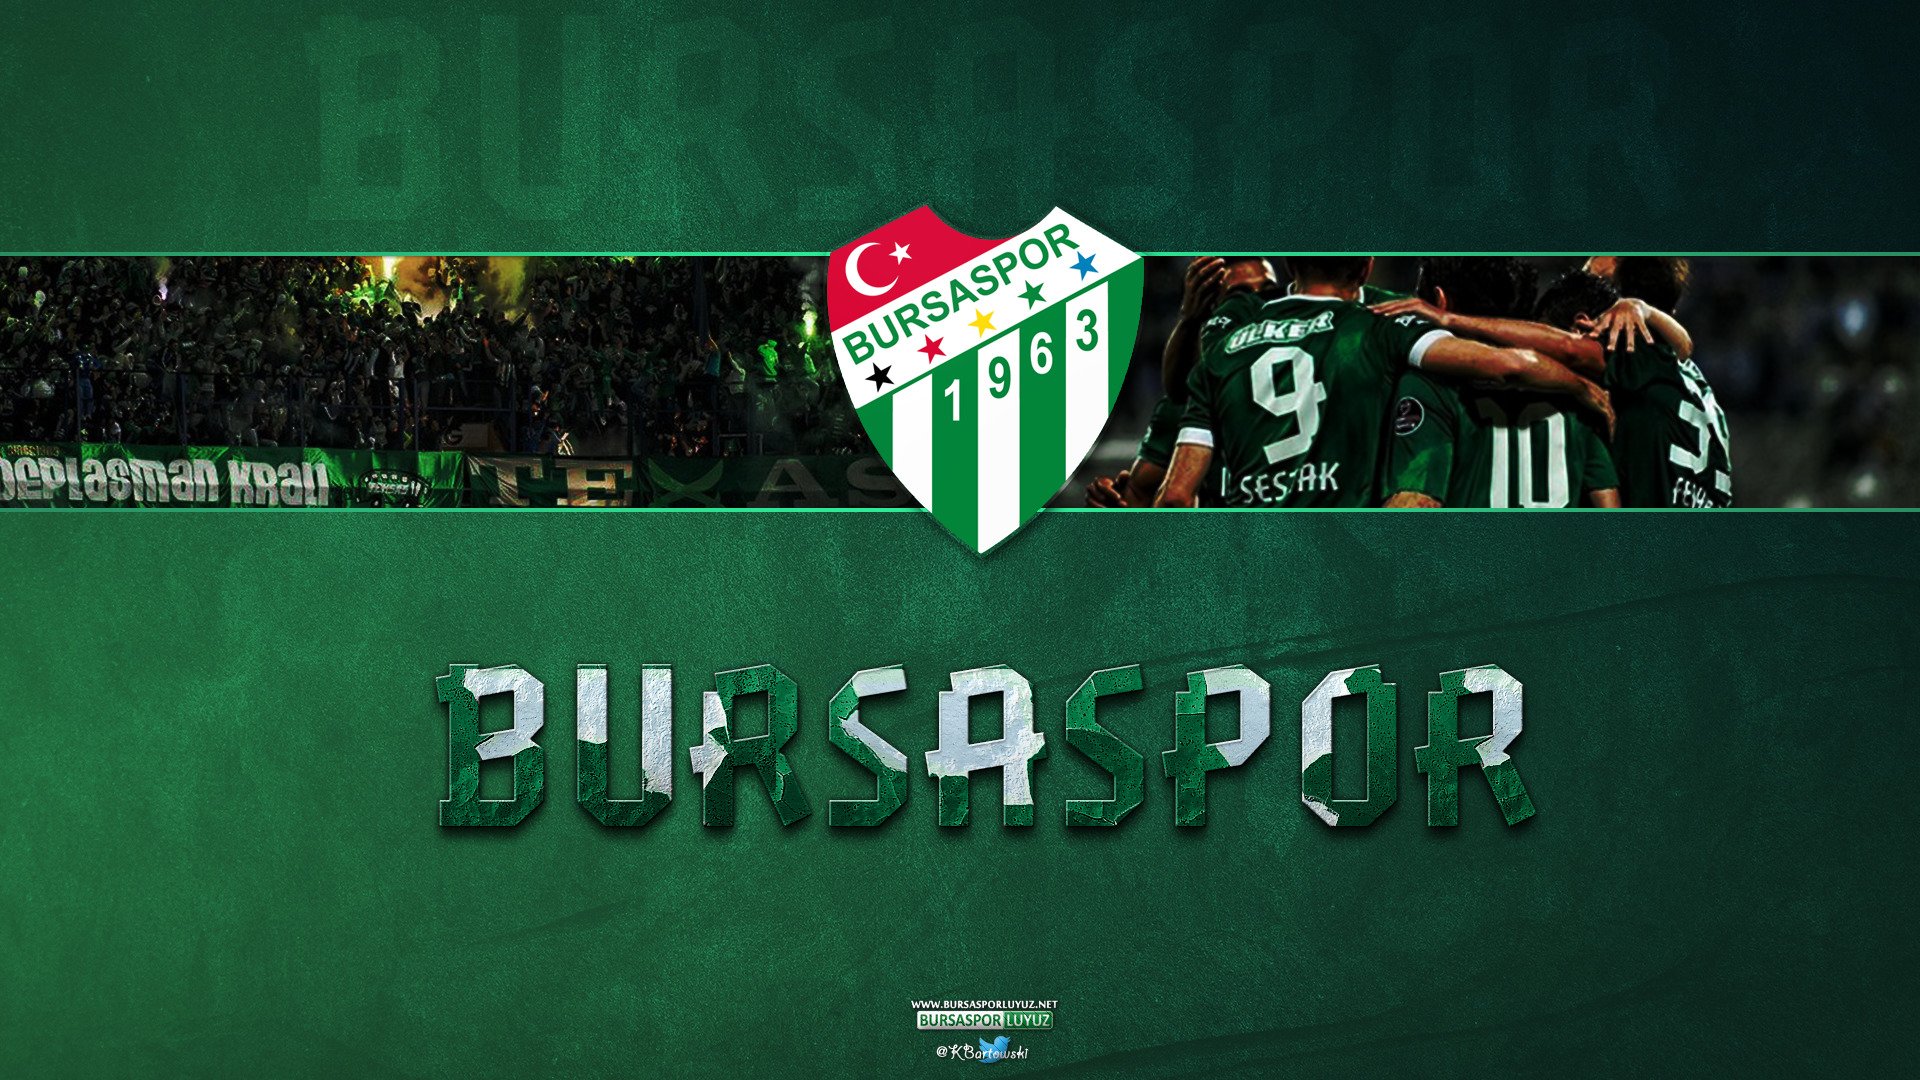 Bursaspor, UEFA, Turkey, Soccer Clubs, Soccer Wallpaper